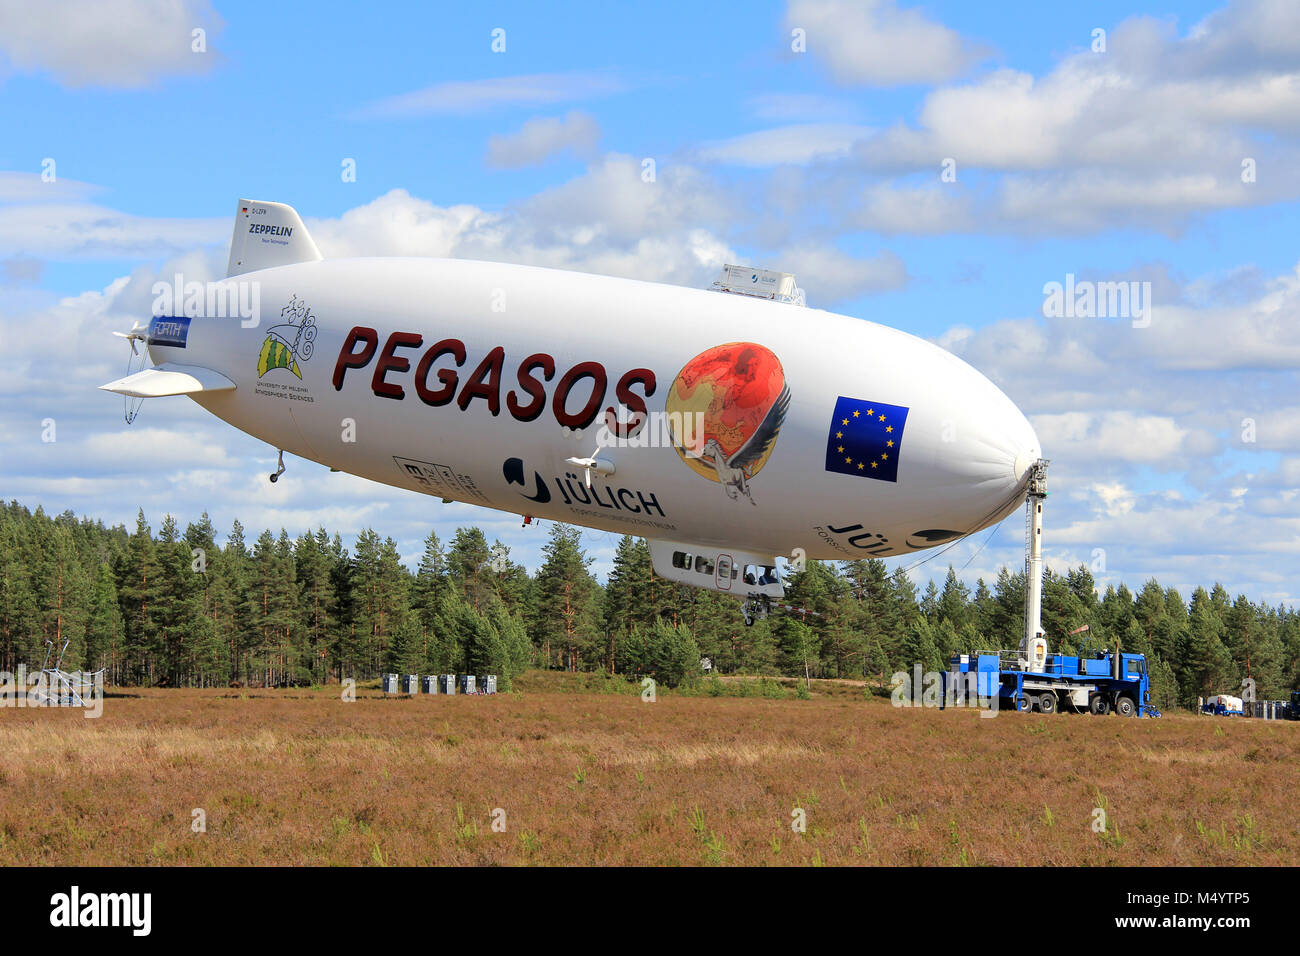 JAMIJARVI, Finlandia - 15 giugno 2013: Pegasos Zeppelin NT dirigibile in Jamijarvi, Finlandia il 15 giugno 2013 dopo aver completato la ca. 30 ricerca voli come Foto Stock